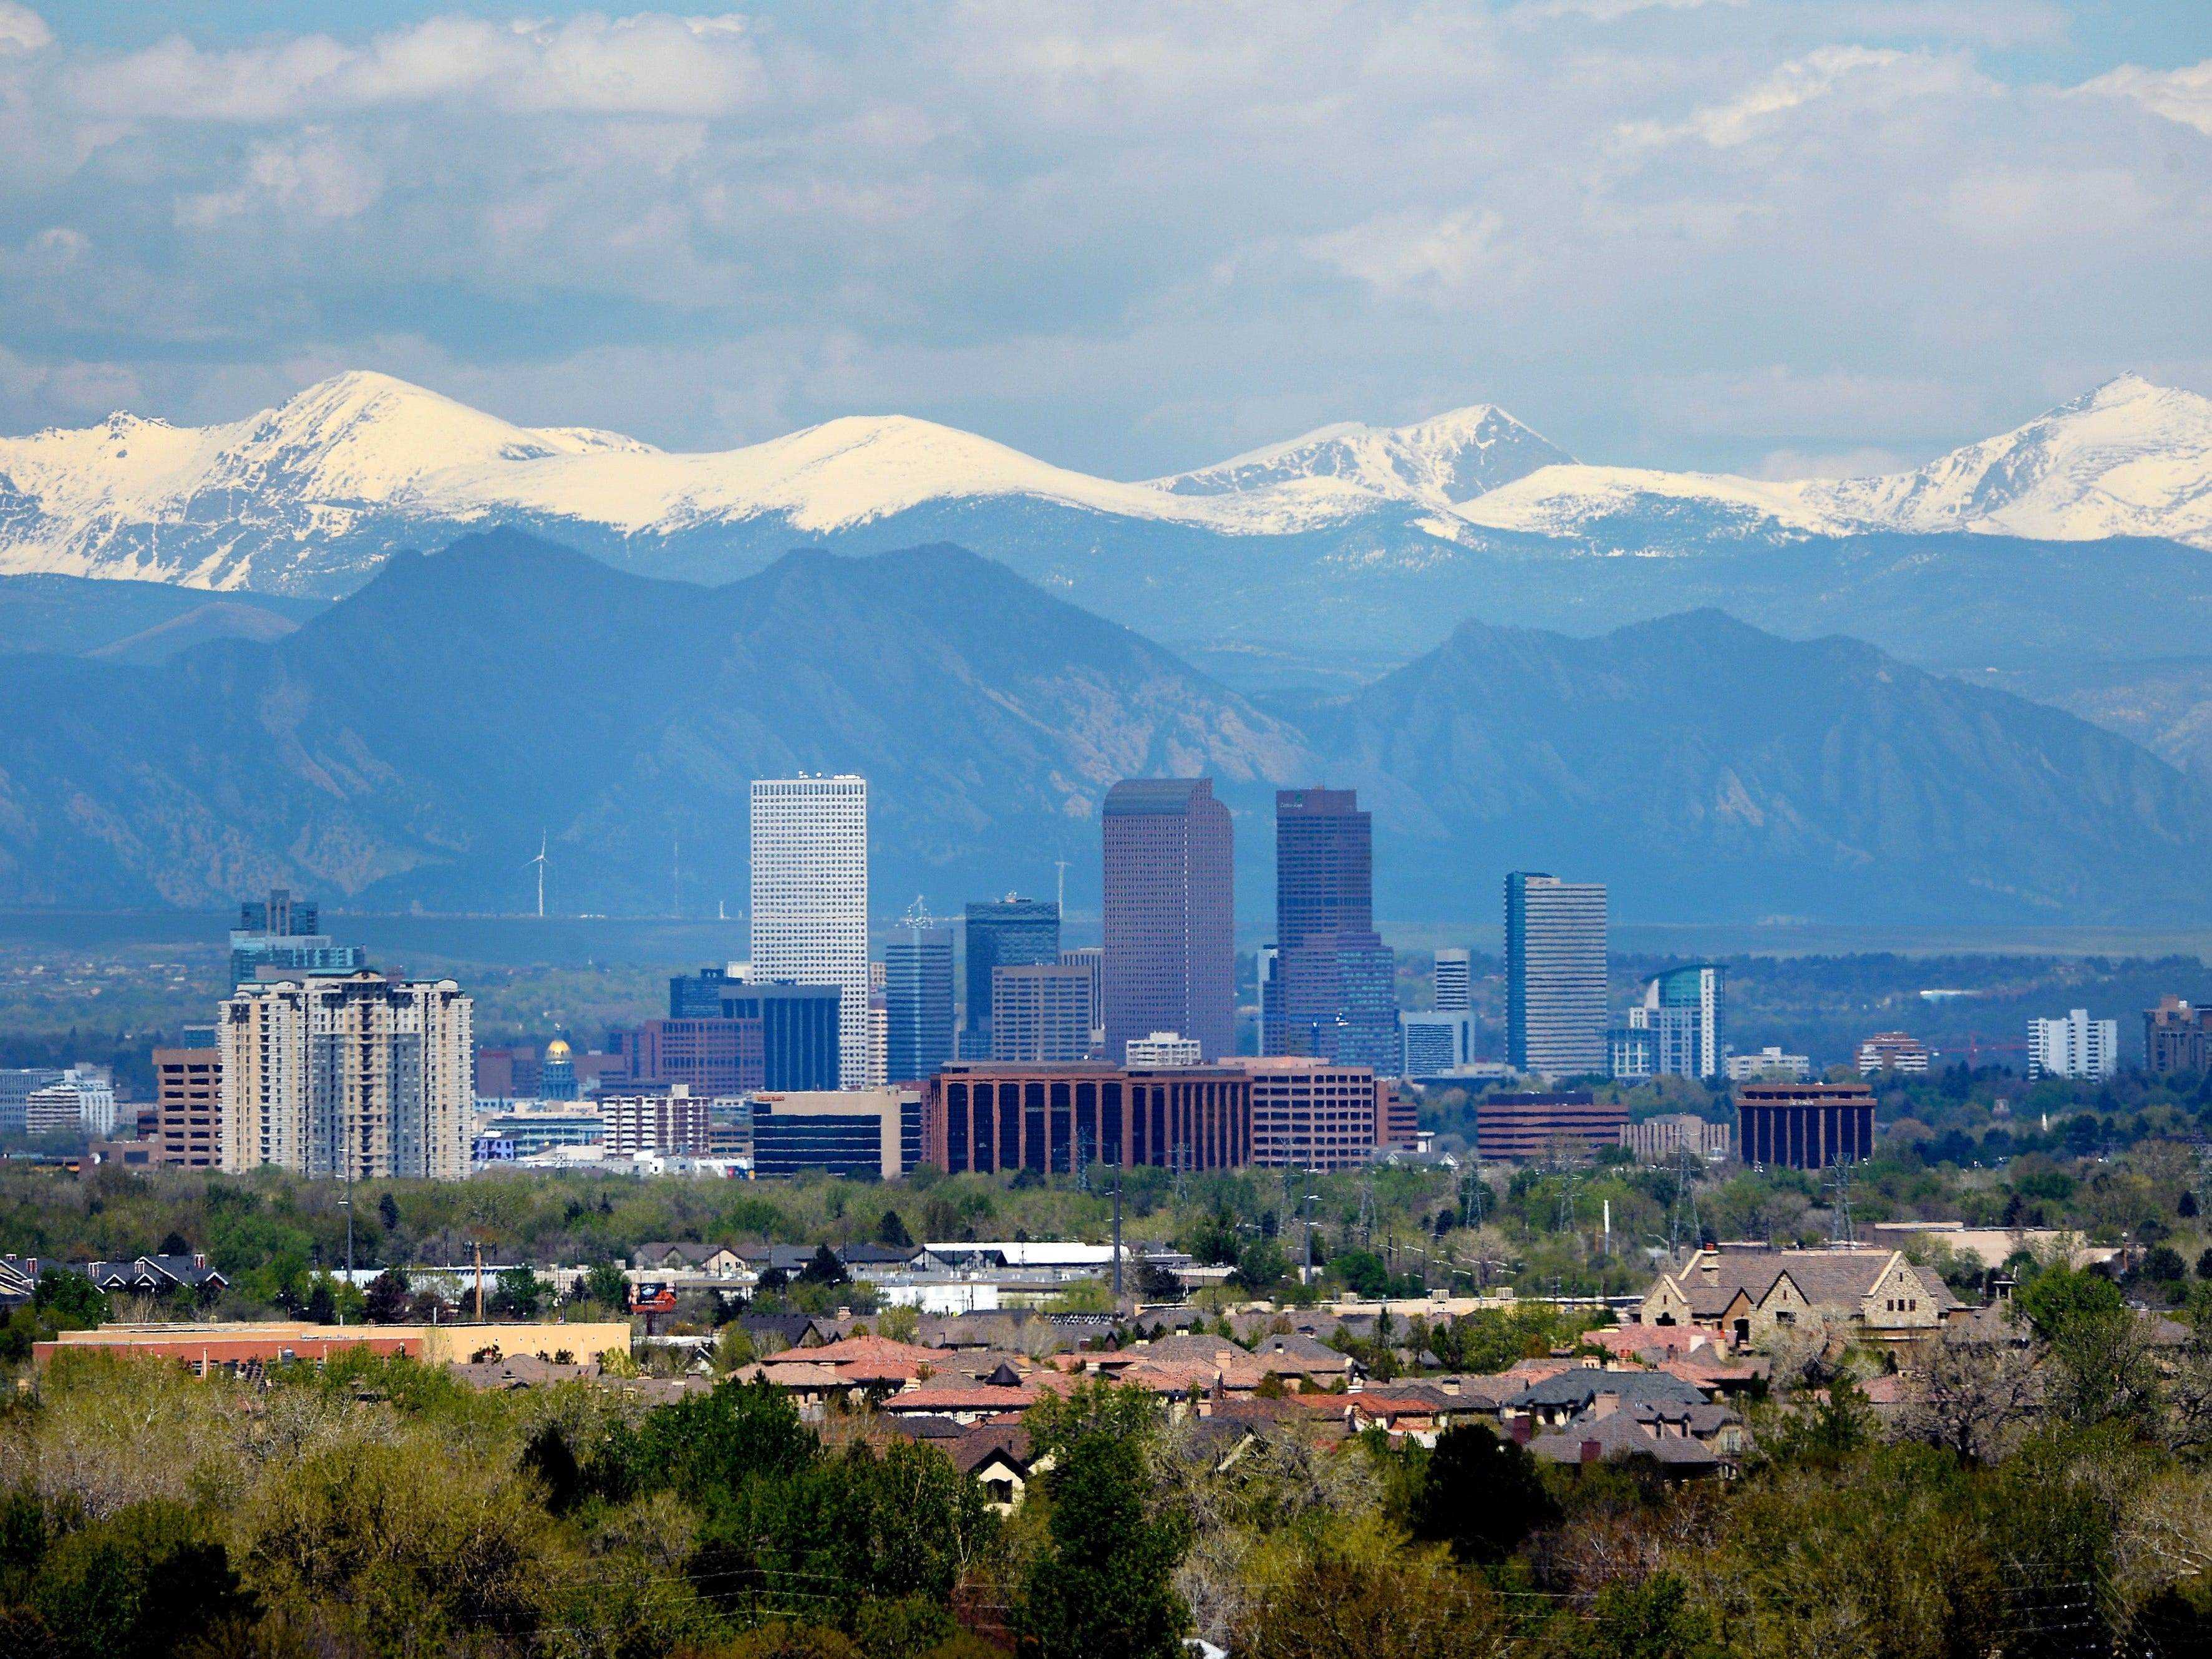 Denver Skyline am 30. April 2015 von der Cherry Creek Dam Road in Denver, Colorado aus gesehen.